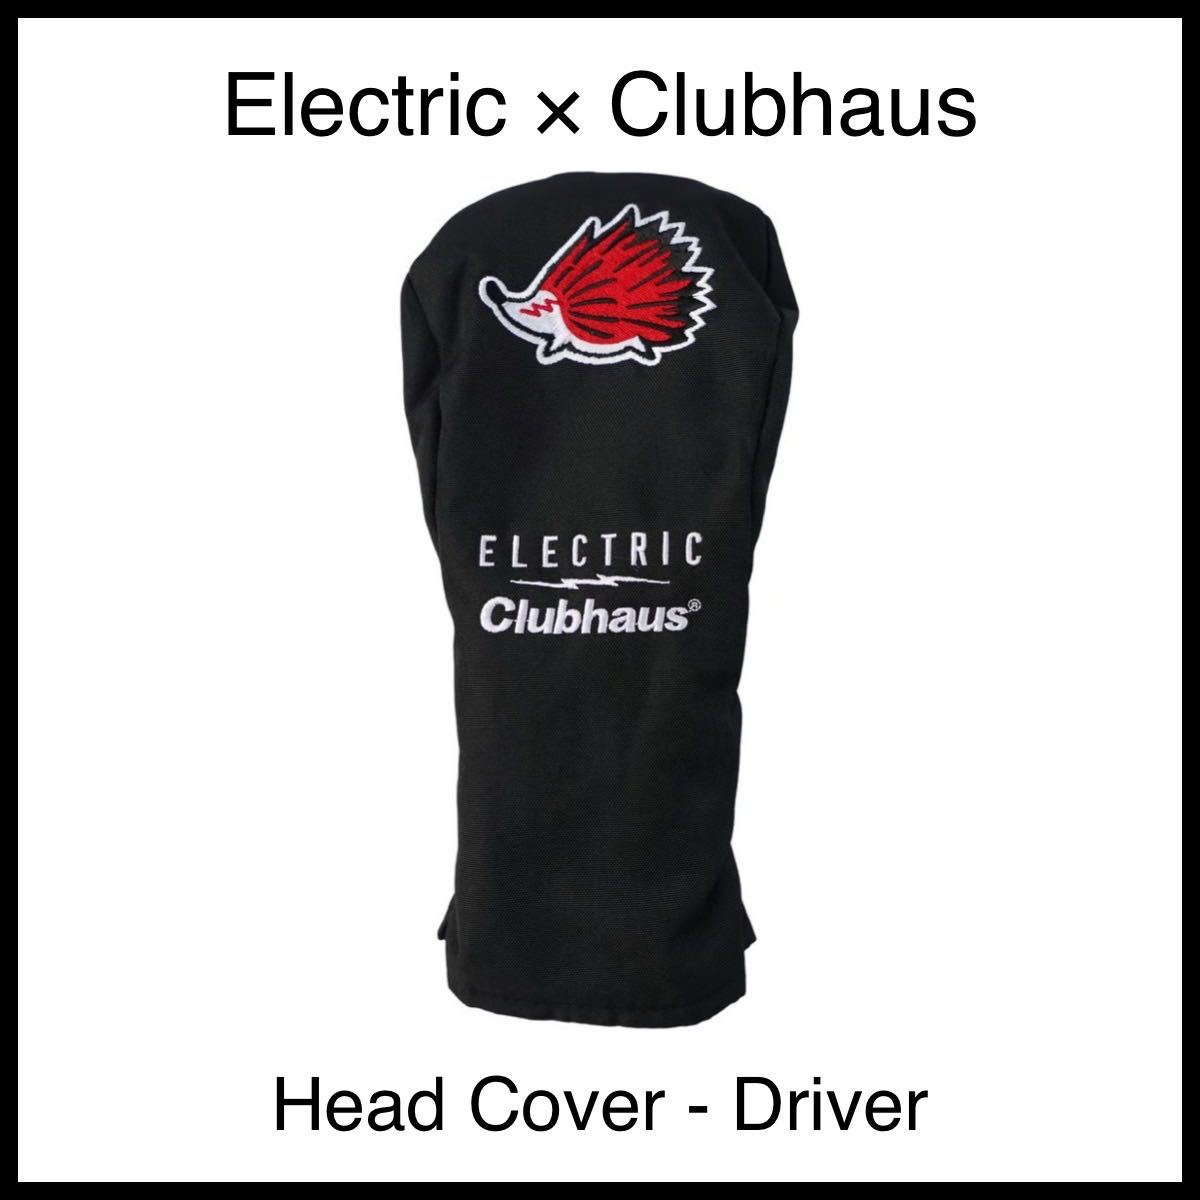 【新品未使用】Electric x Clubhaus Head Cover - Driver ドライバー ヘッドカバー DR クラブハウス エレクトリックゴルフ コラボ 限定